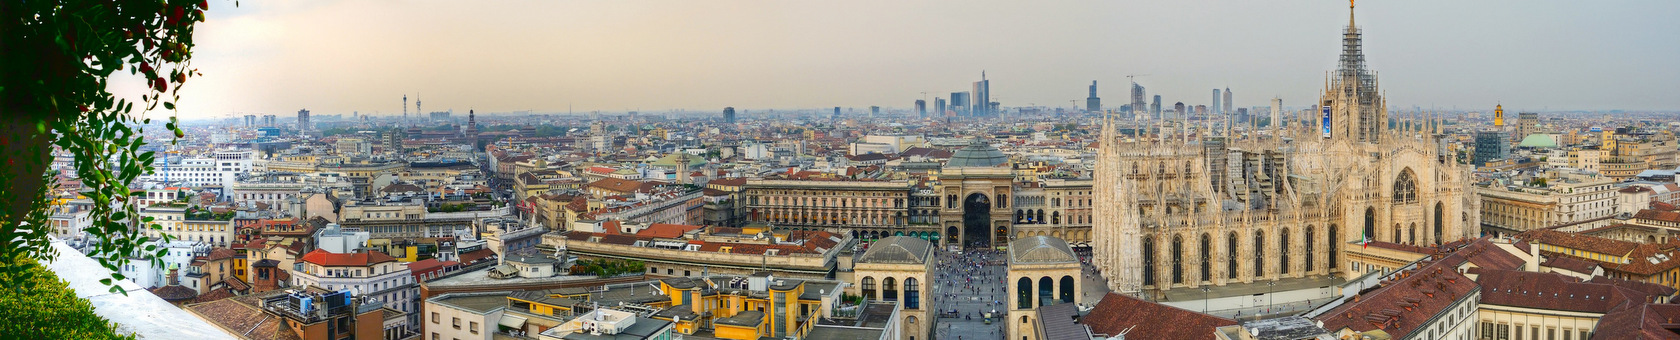 Mediolan - interesujące miasto do nauki języka włoskiego